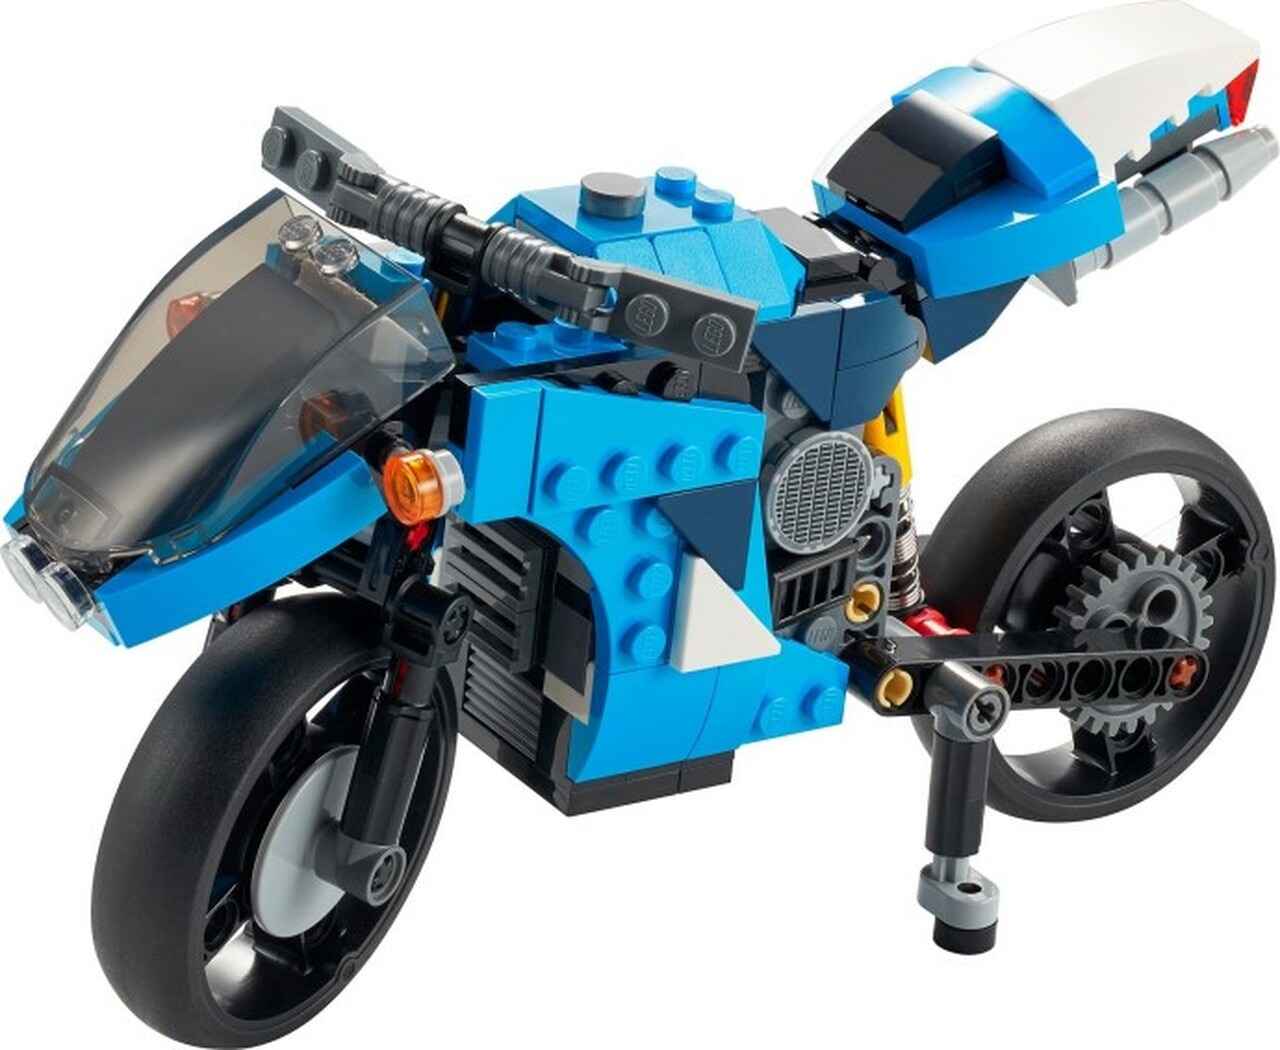 LEGO Superbike